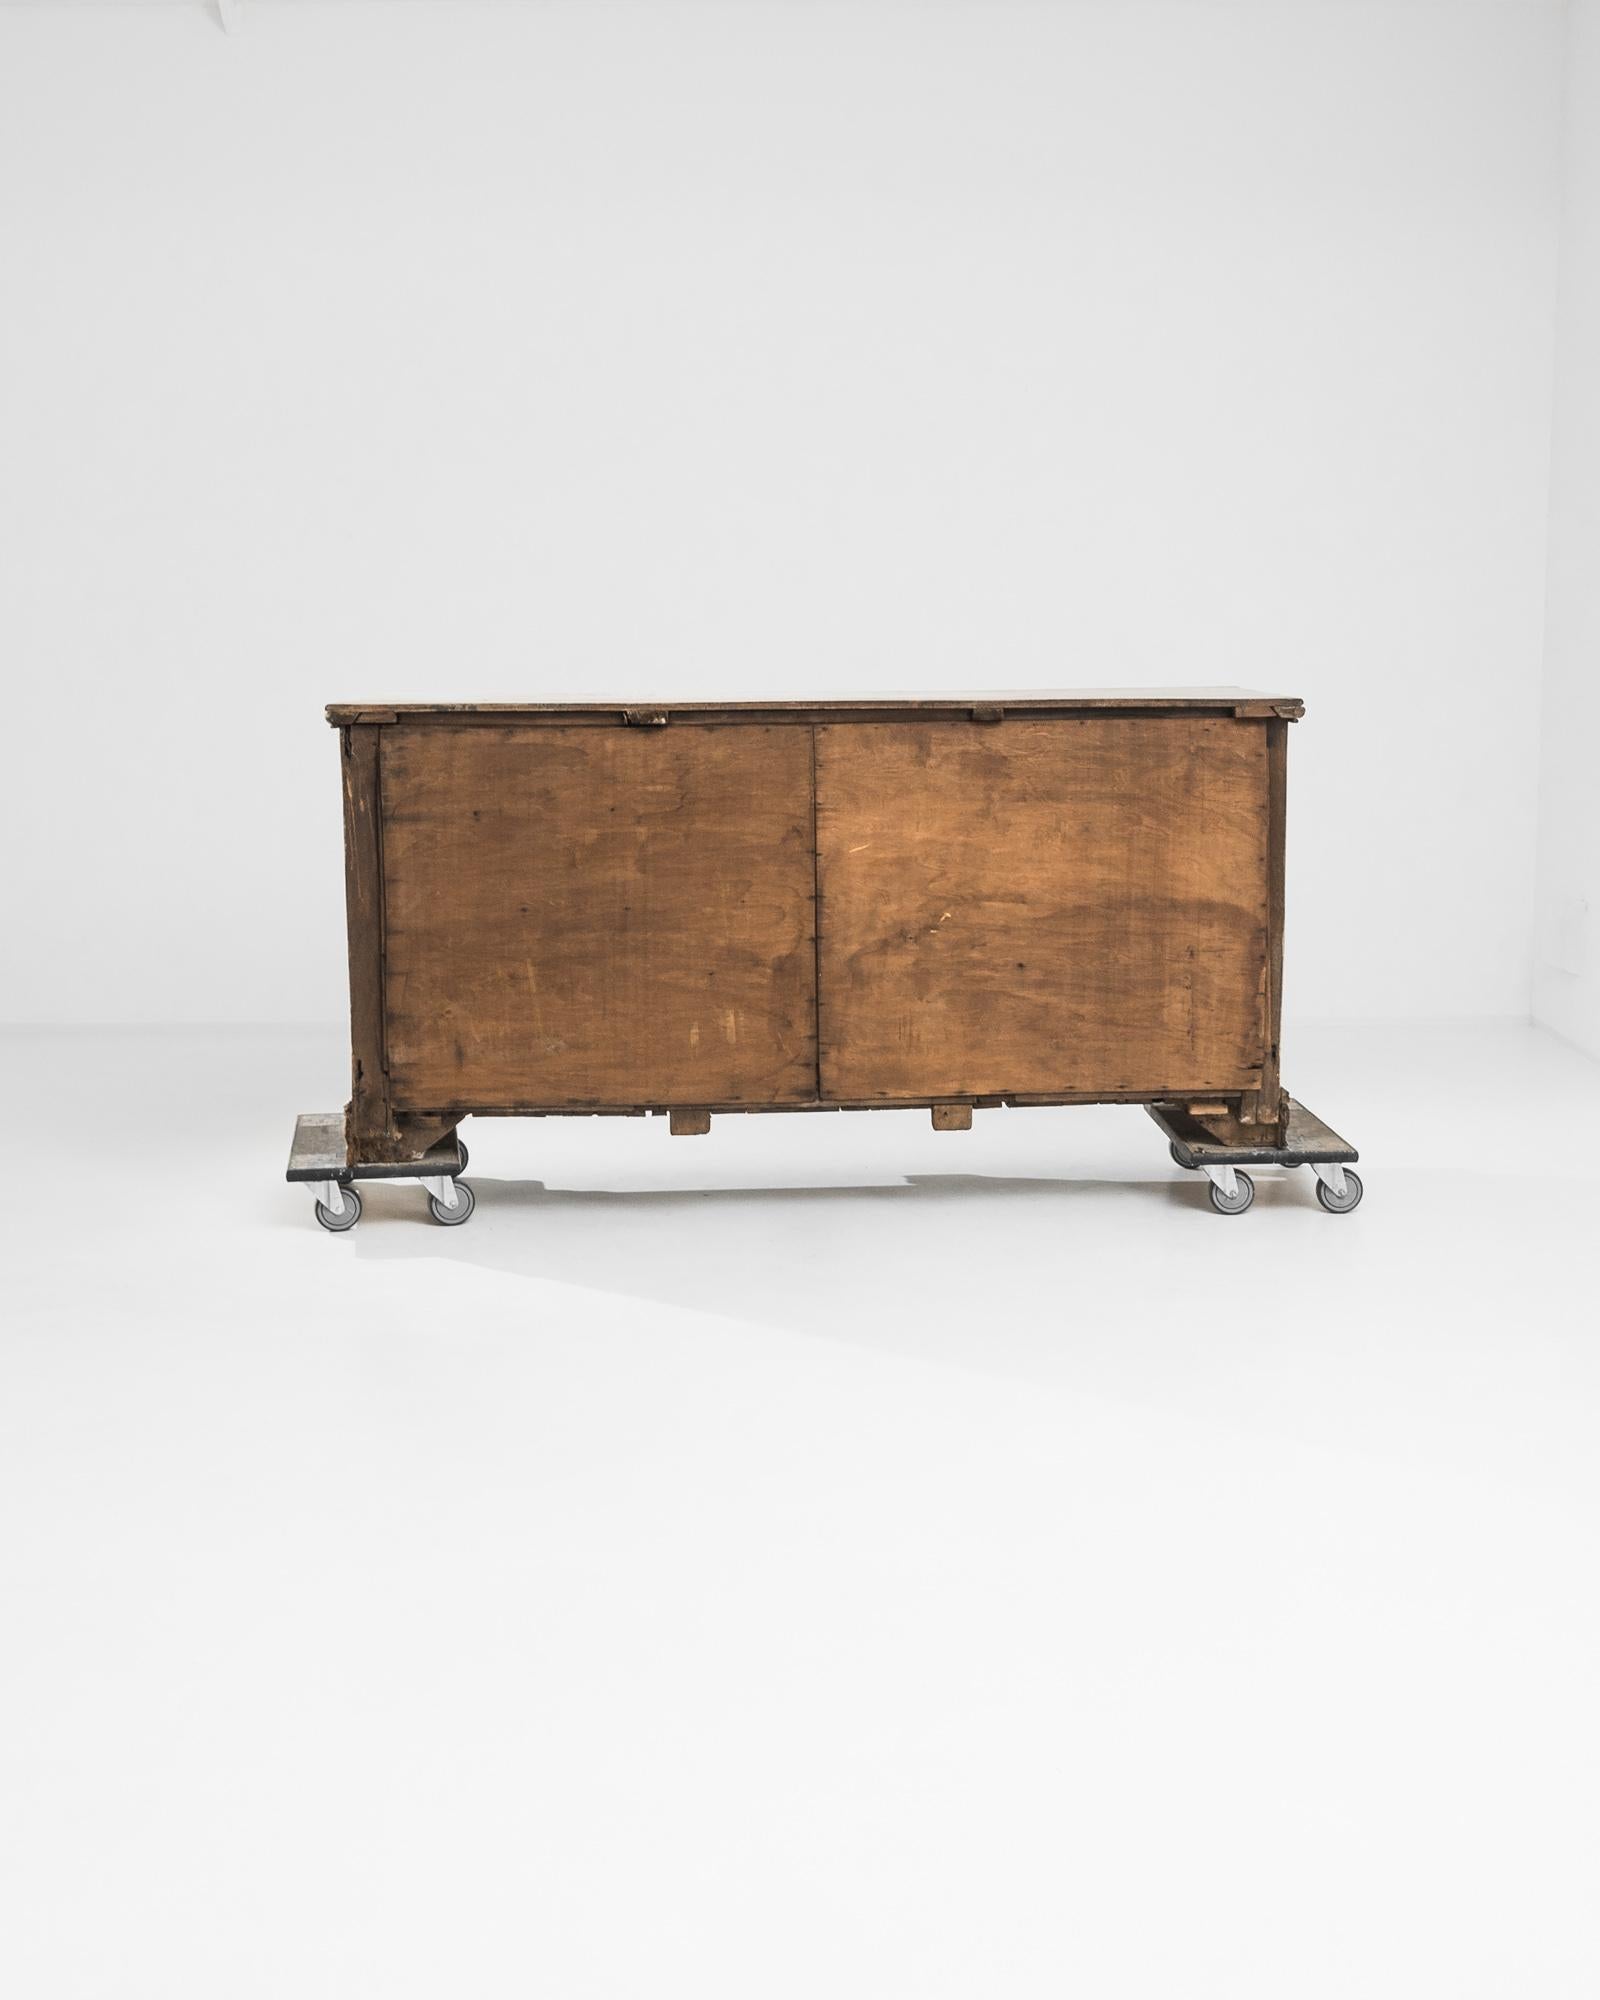 Die English Bleached Oak Chest of Drawers, ein vielseitiges und langgestrecktes Möbelstück, das Funktionalität und Eleganz nahtlos miteinander verbindet, steht für die Anmut der 1820er Jahre. Die Kommode verfügt über drei kleine Schubladen im oberen